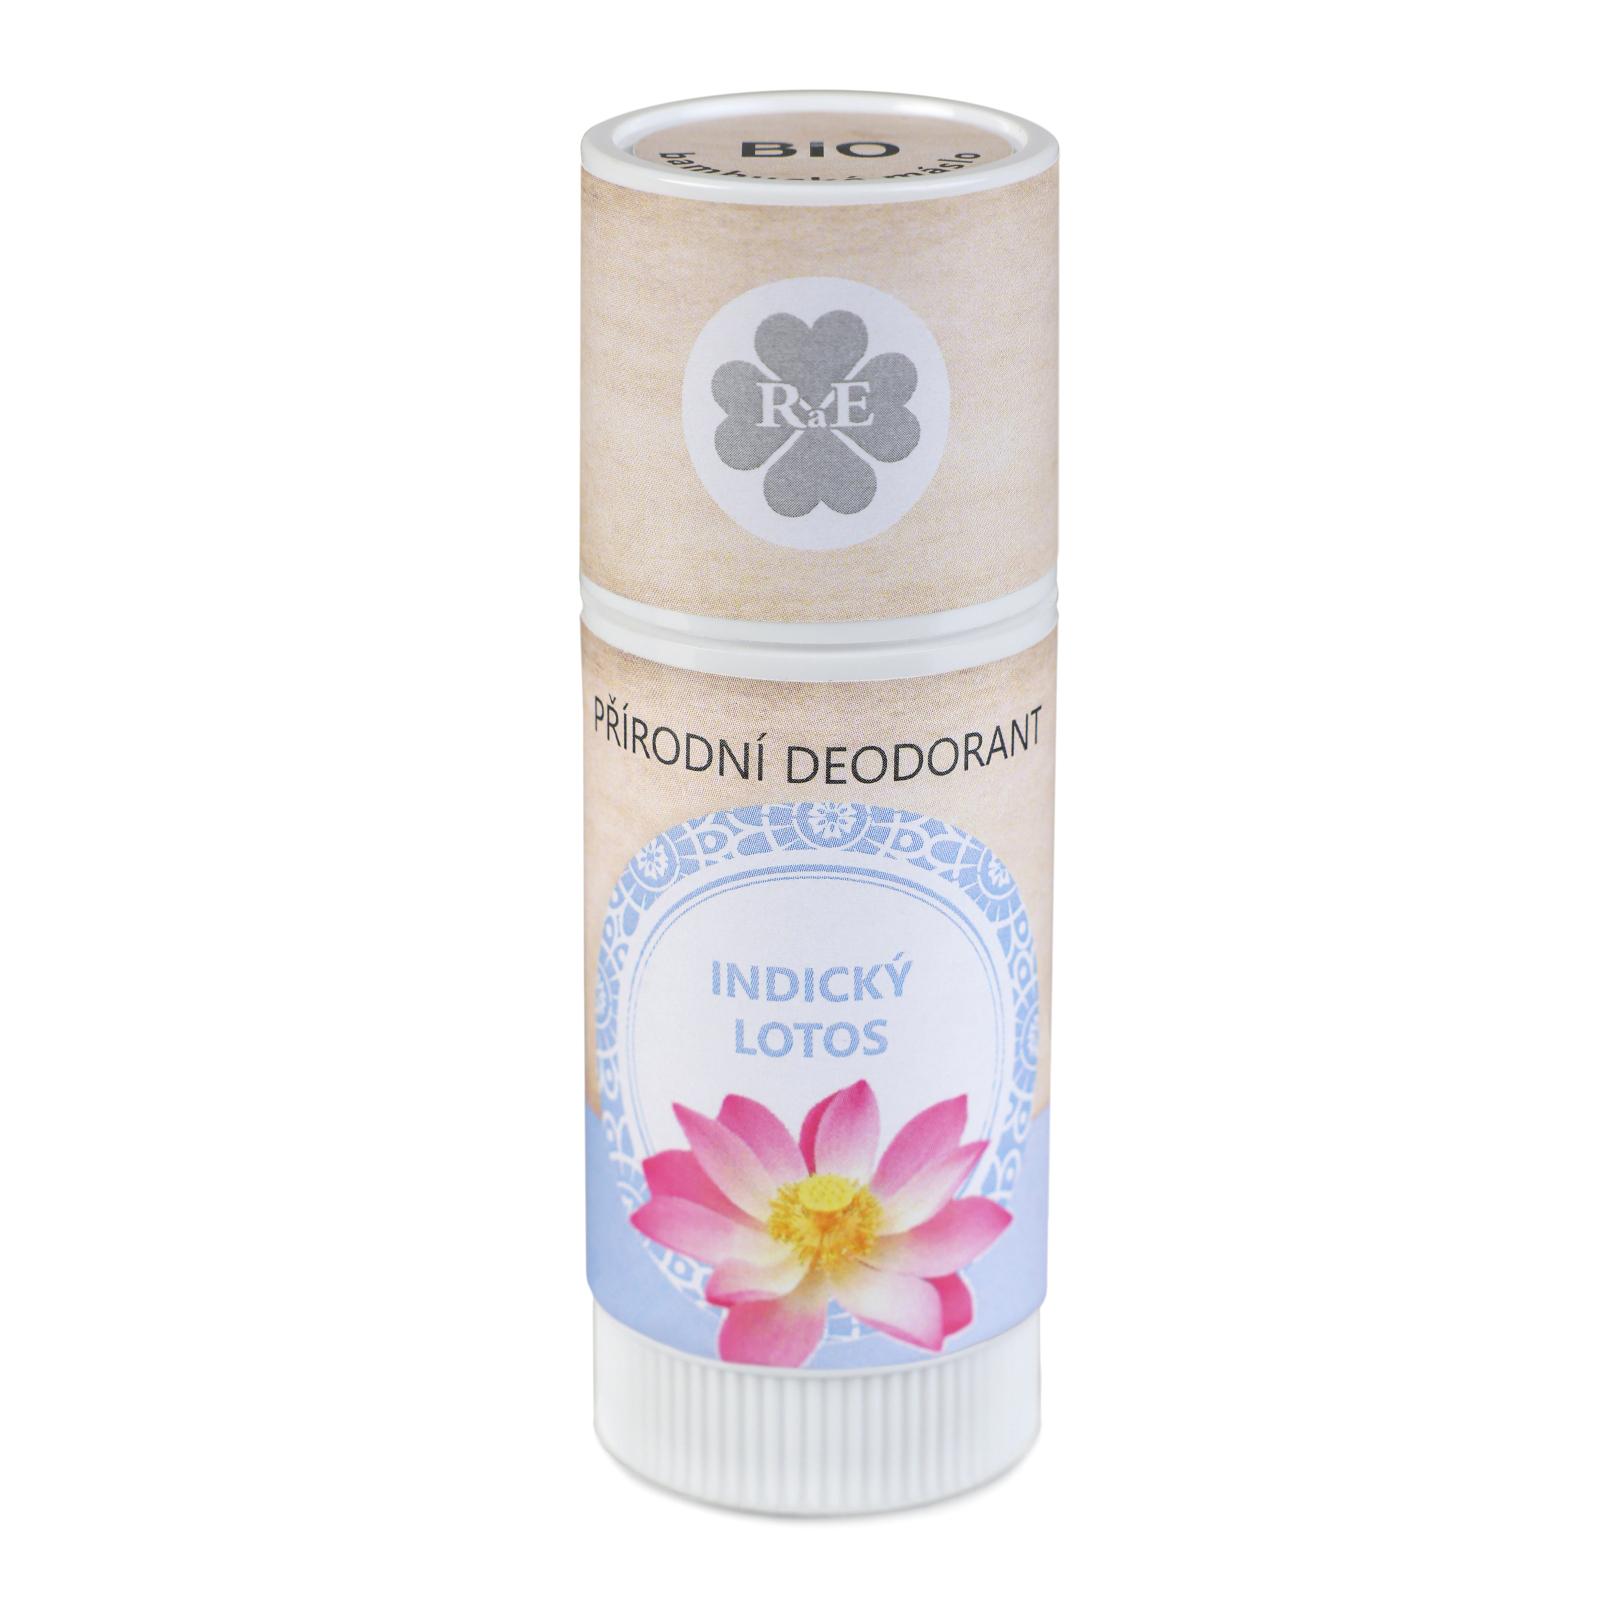 RaE Přírodní deodorant s vůní indického lotosu 25 ml 